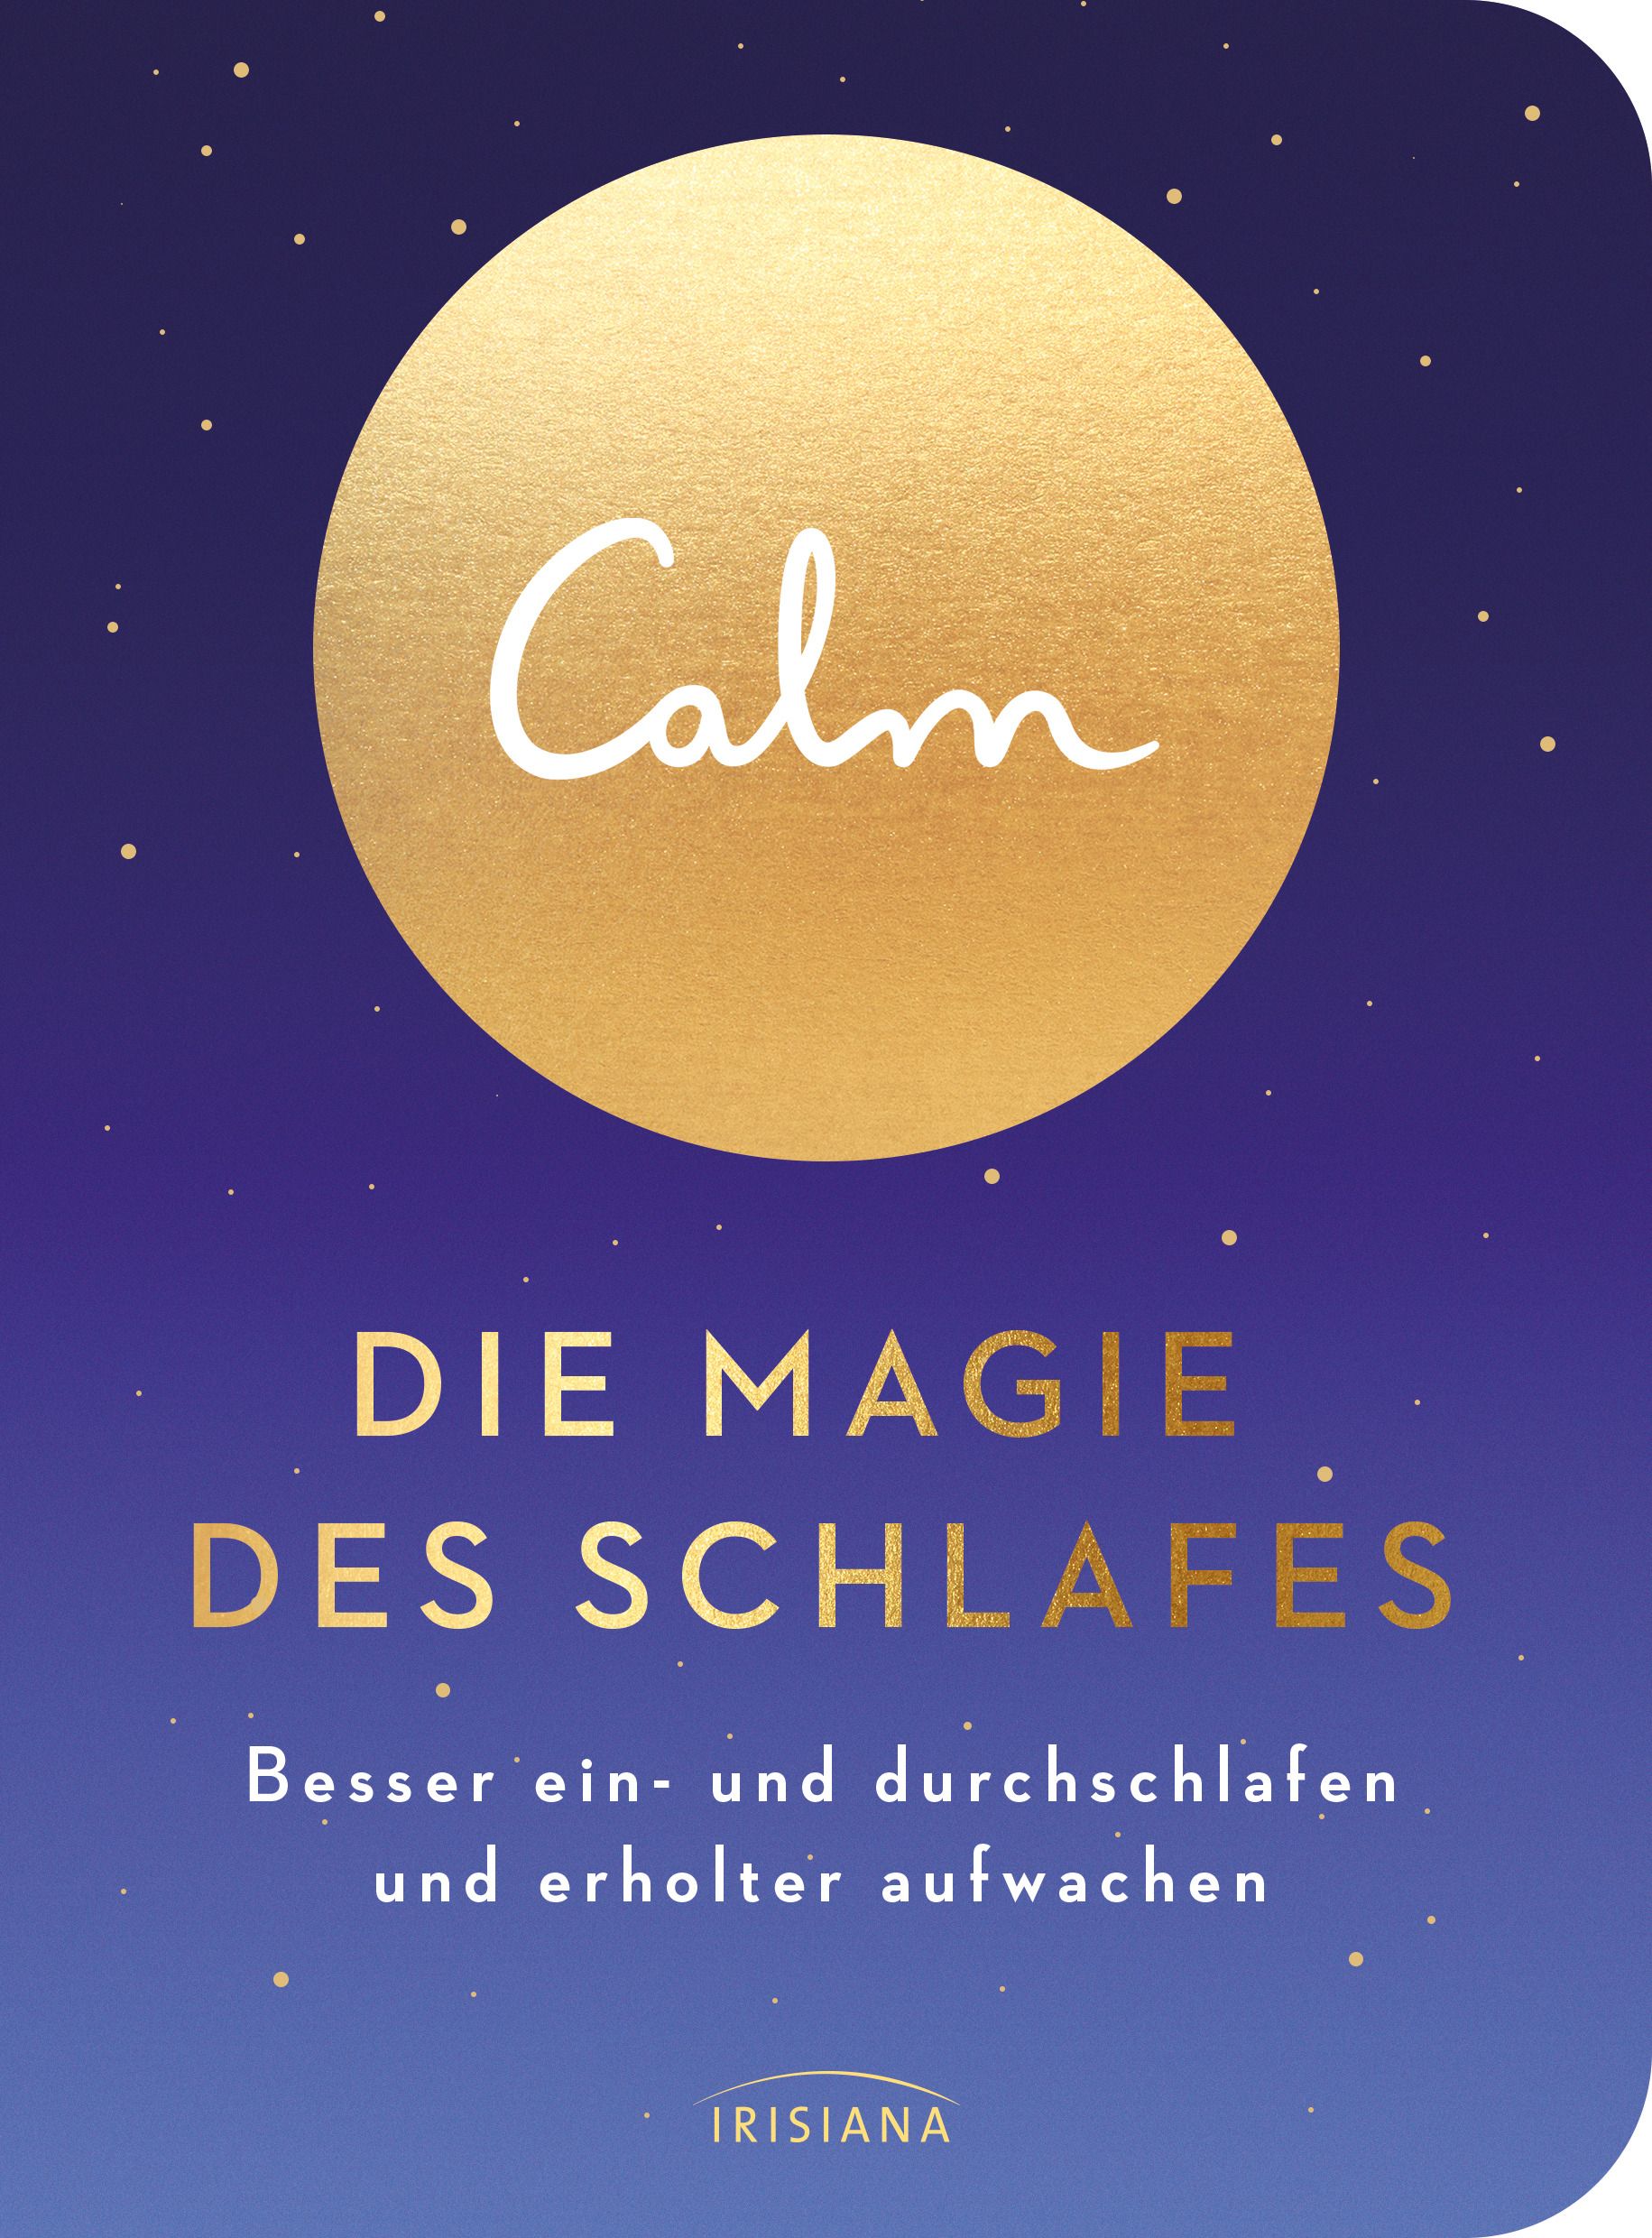 Calm – Die Magie des Schlafes